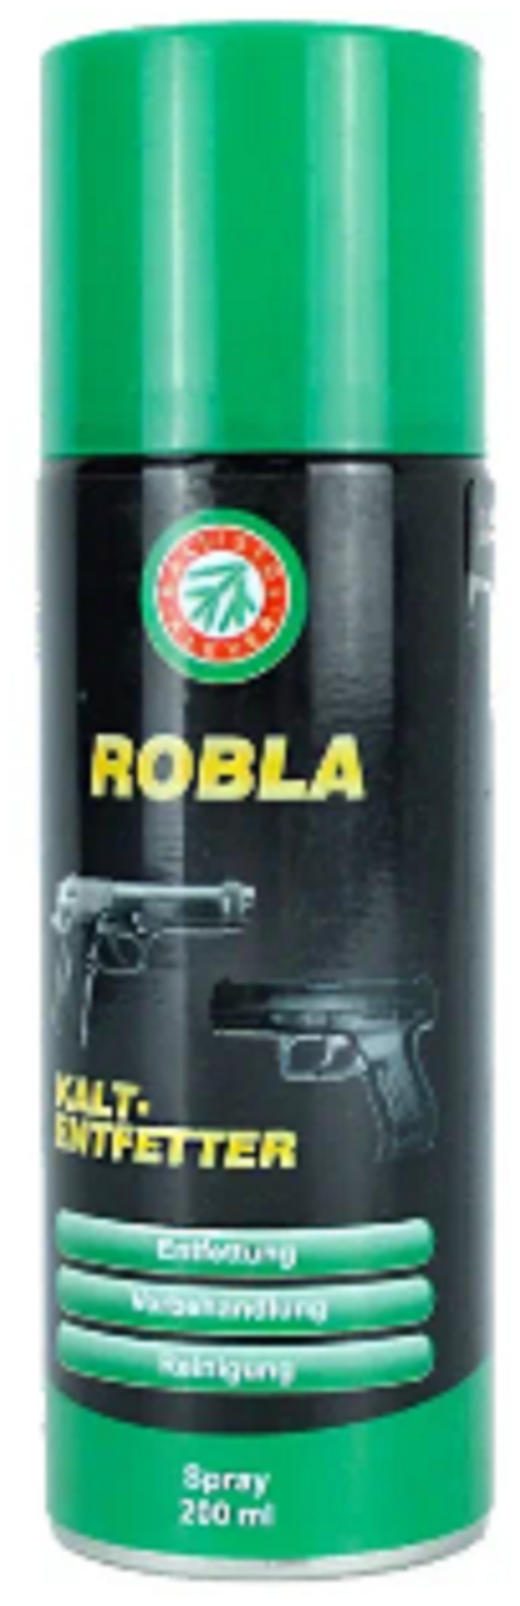 Средство обезжиривающее Klever-Ballistol Robla-Kaltentfetter spray 200 мл (23362)